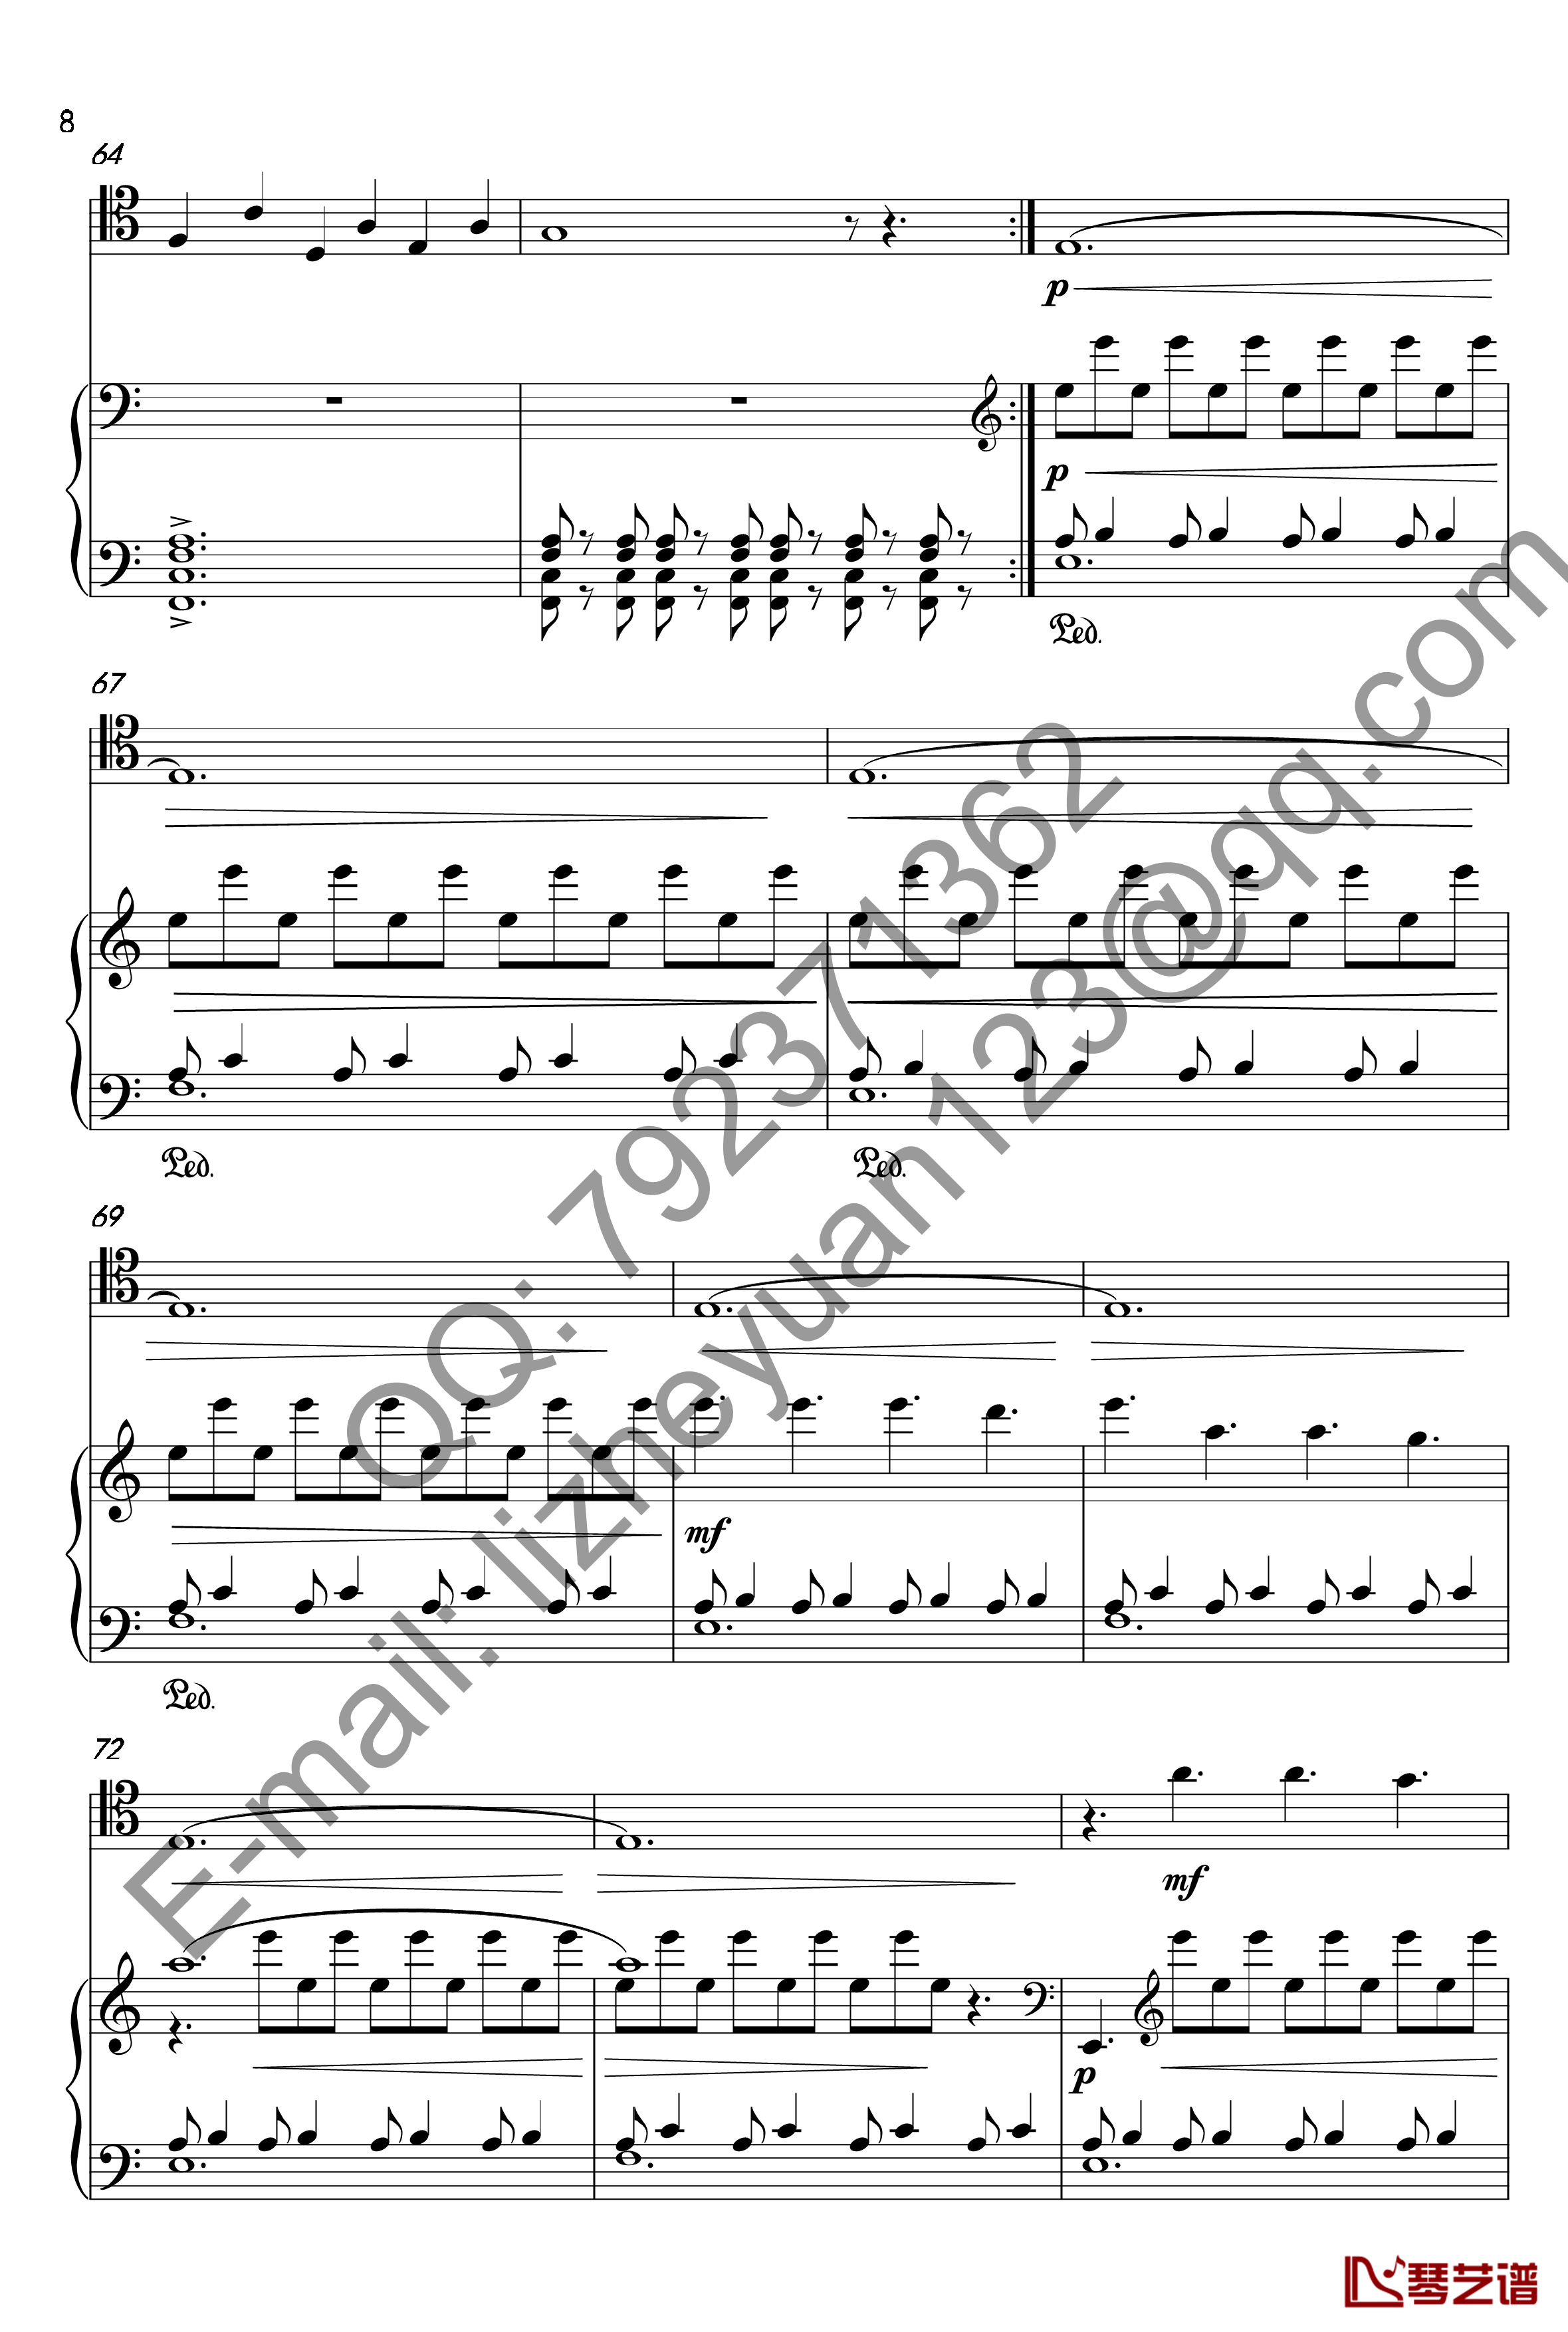 唐顿庄园主题曲钢琴谱-钢琴+大提琴-唐顿庄园8